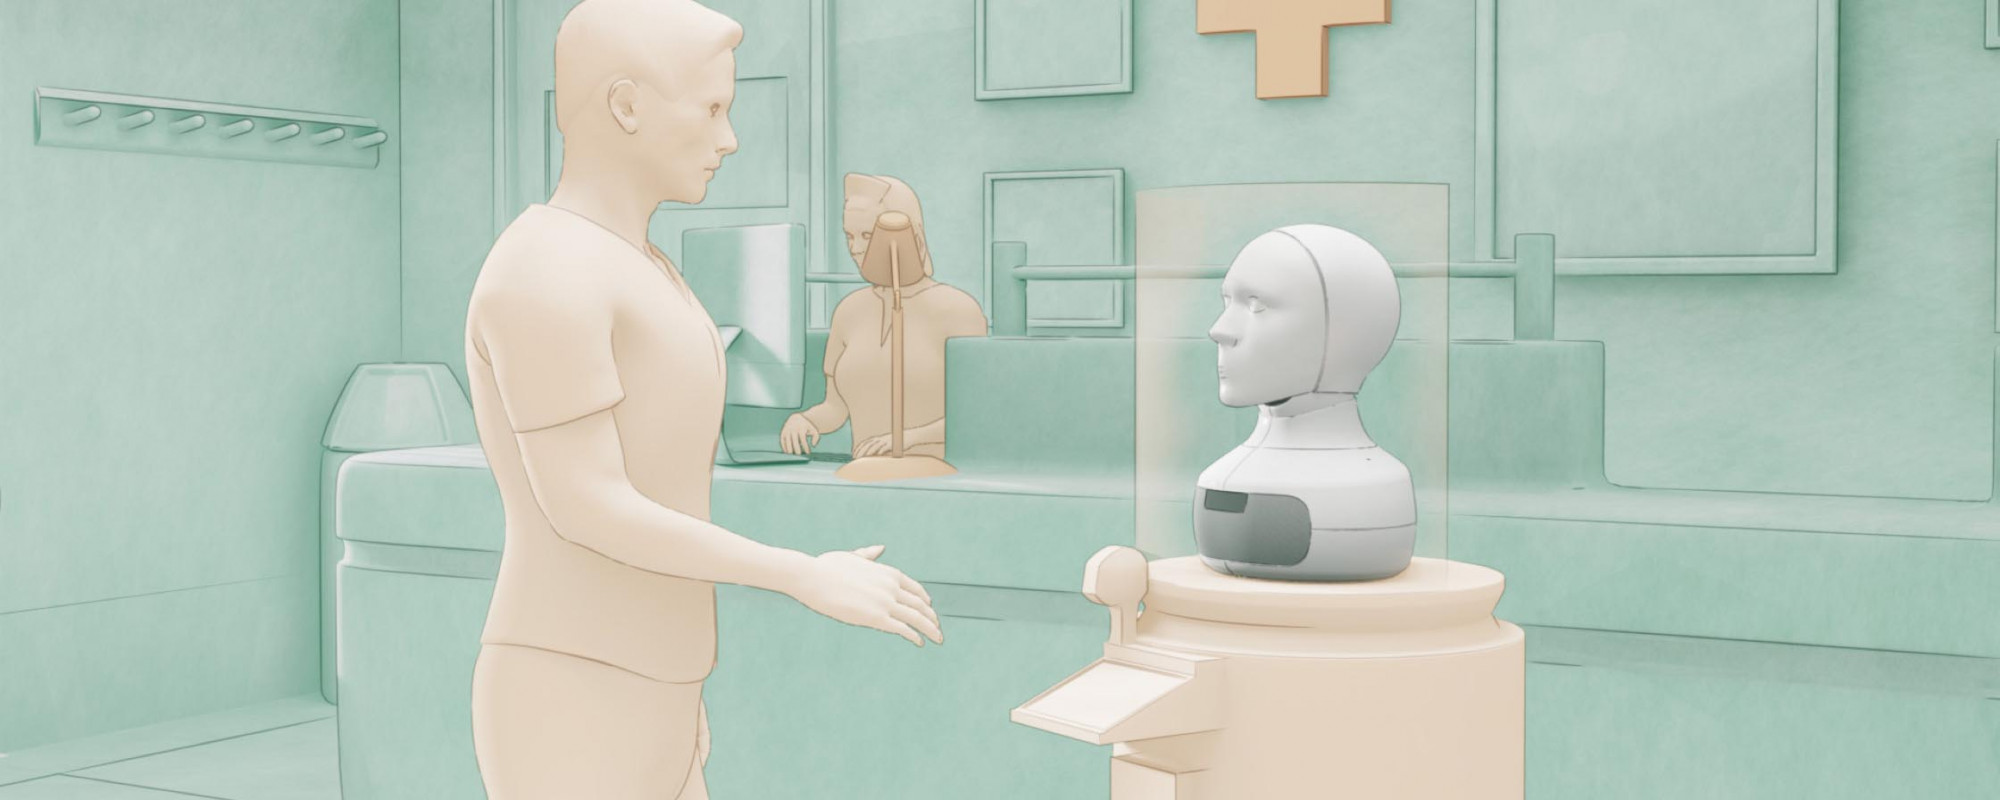 Mô hình robot xã hội trò chuyện với bệnh nhân gặp vấn đề về tâm lý do công ty Furhat Robotics phát triển - Ảnh: Furhat Robotics